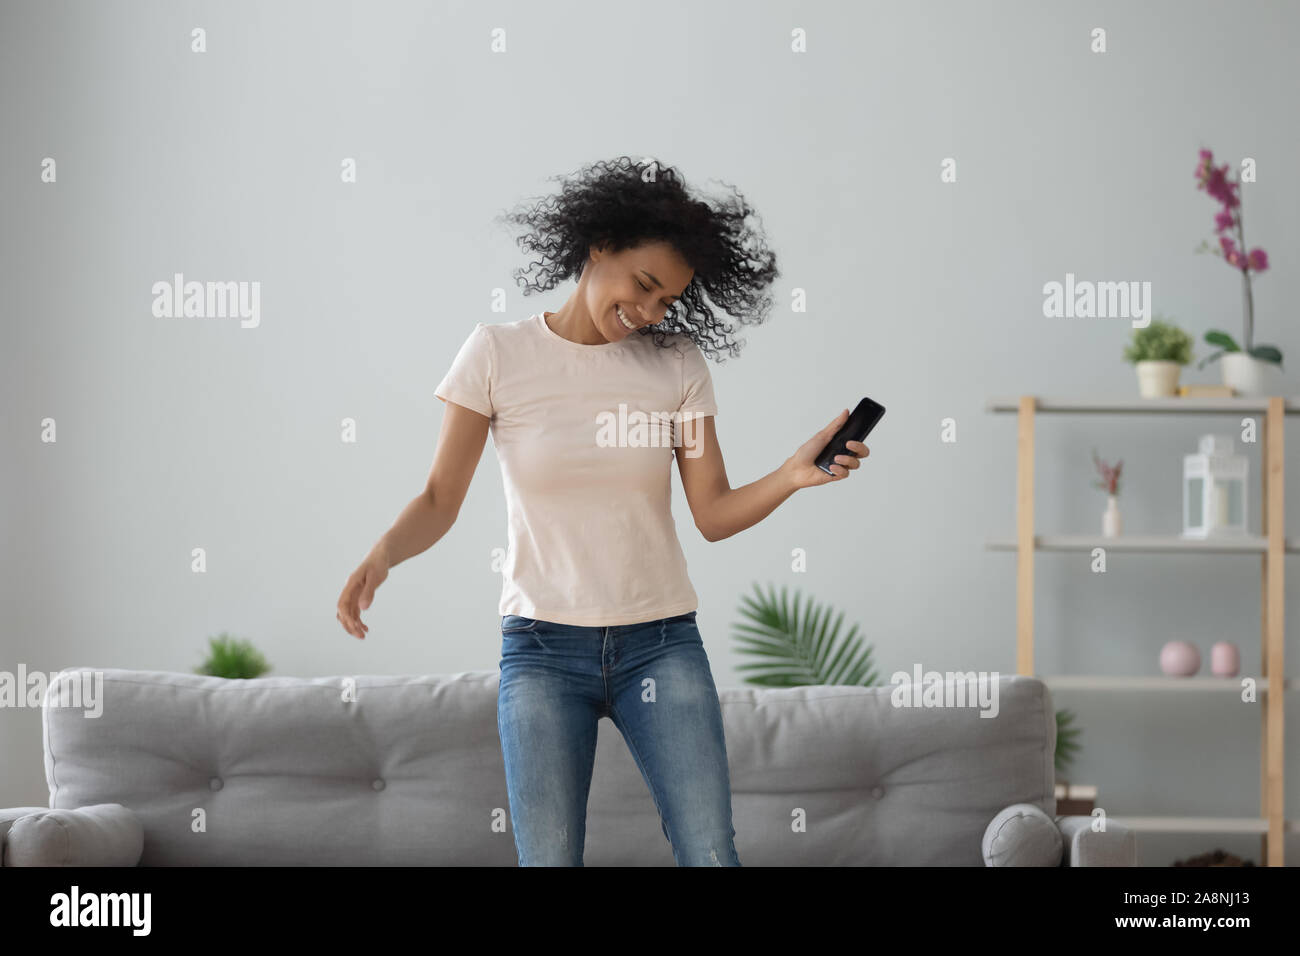 Emozionato americano africano donna saltare, ballare, usando il telefono Foto Stock